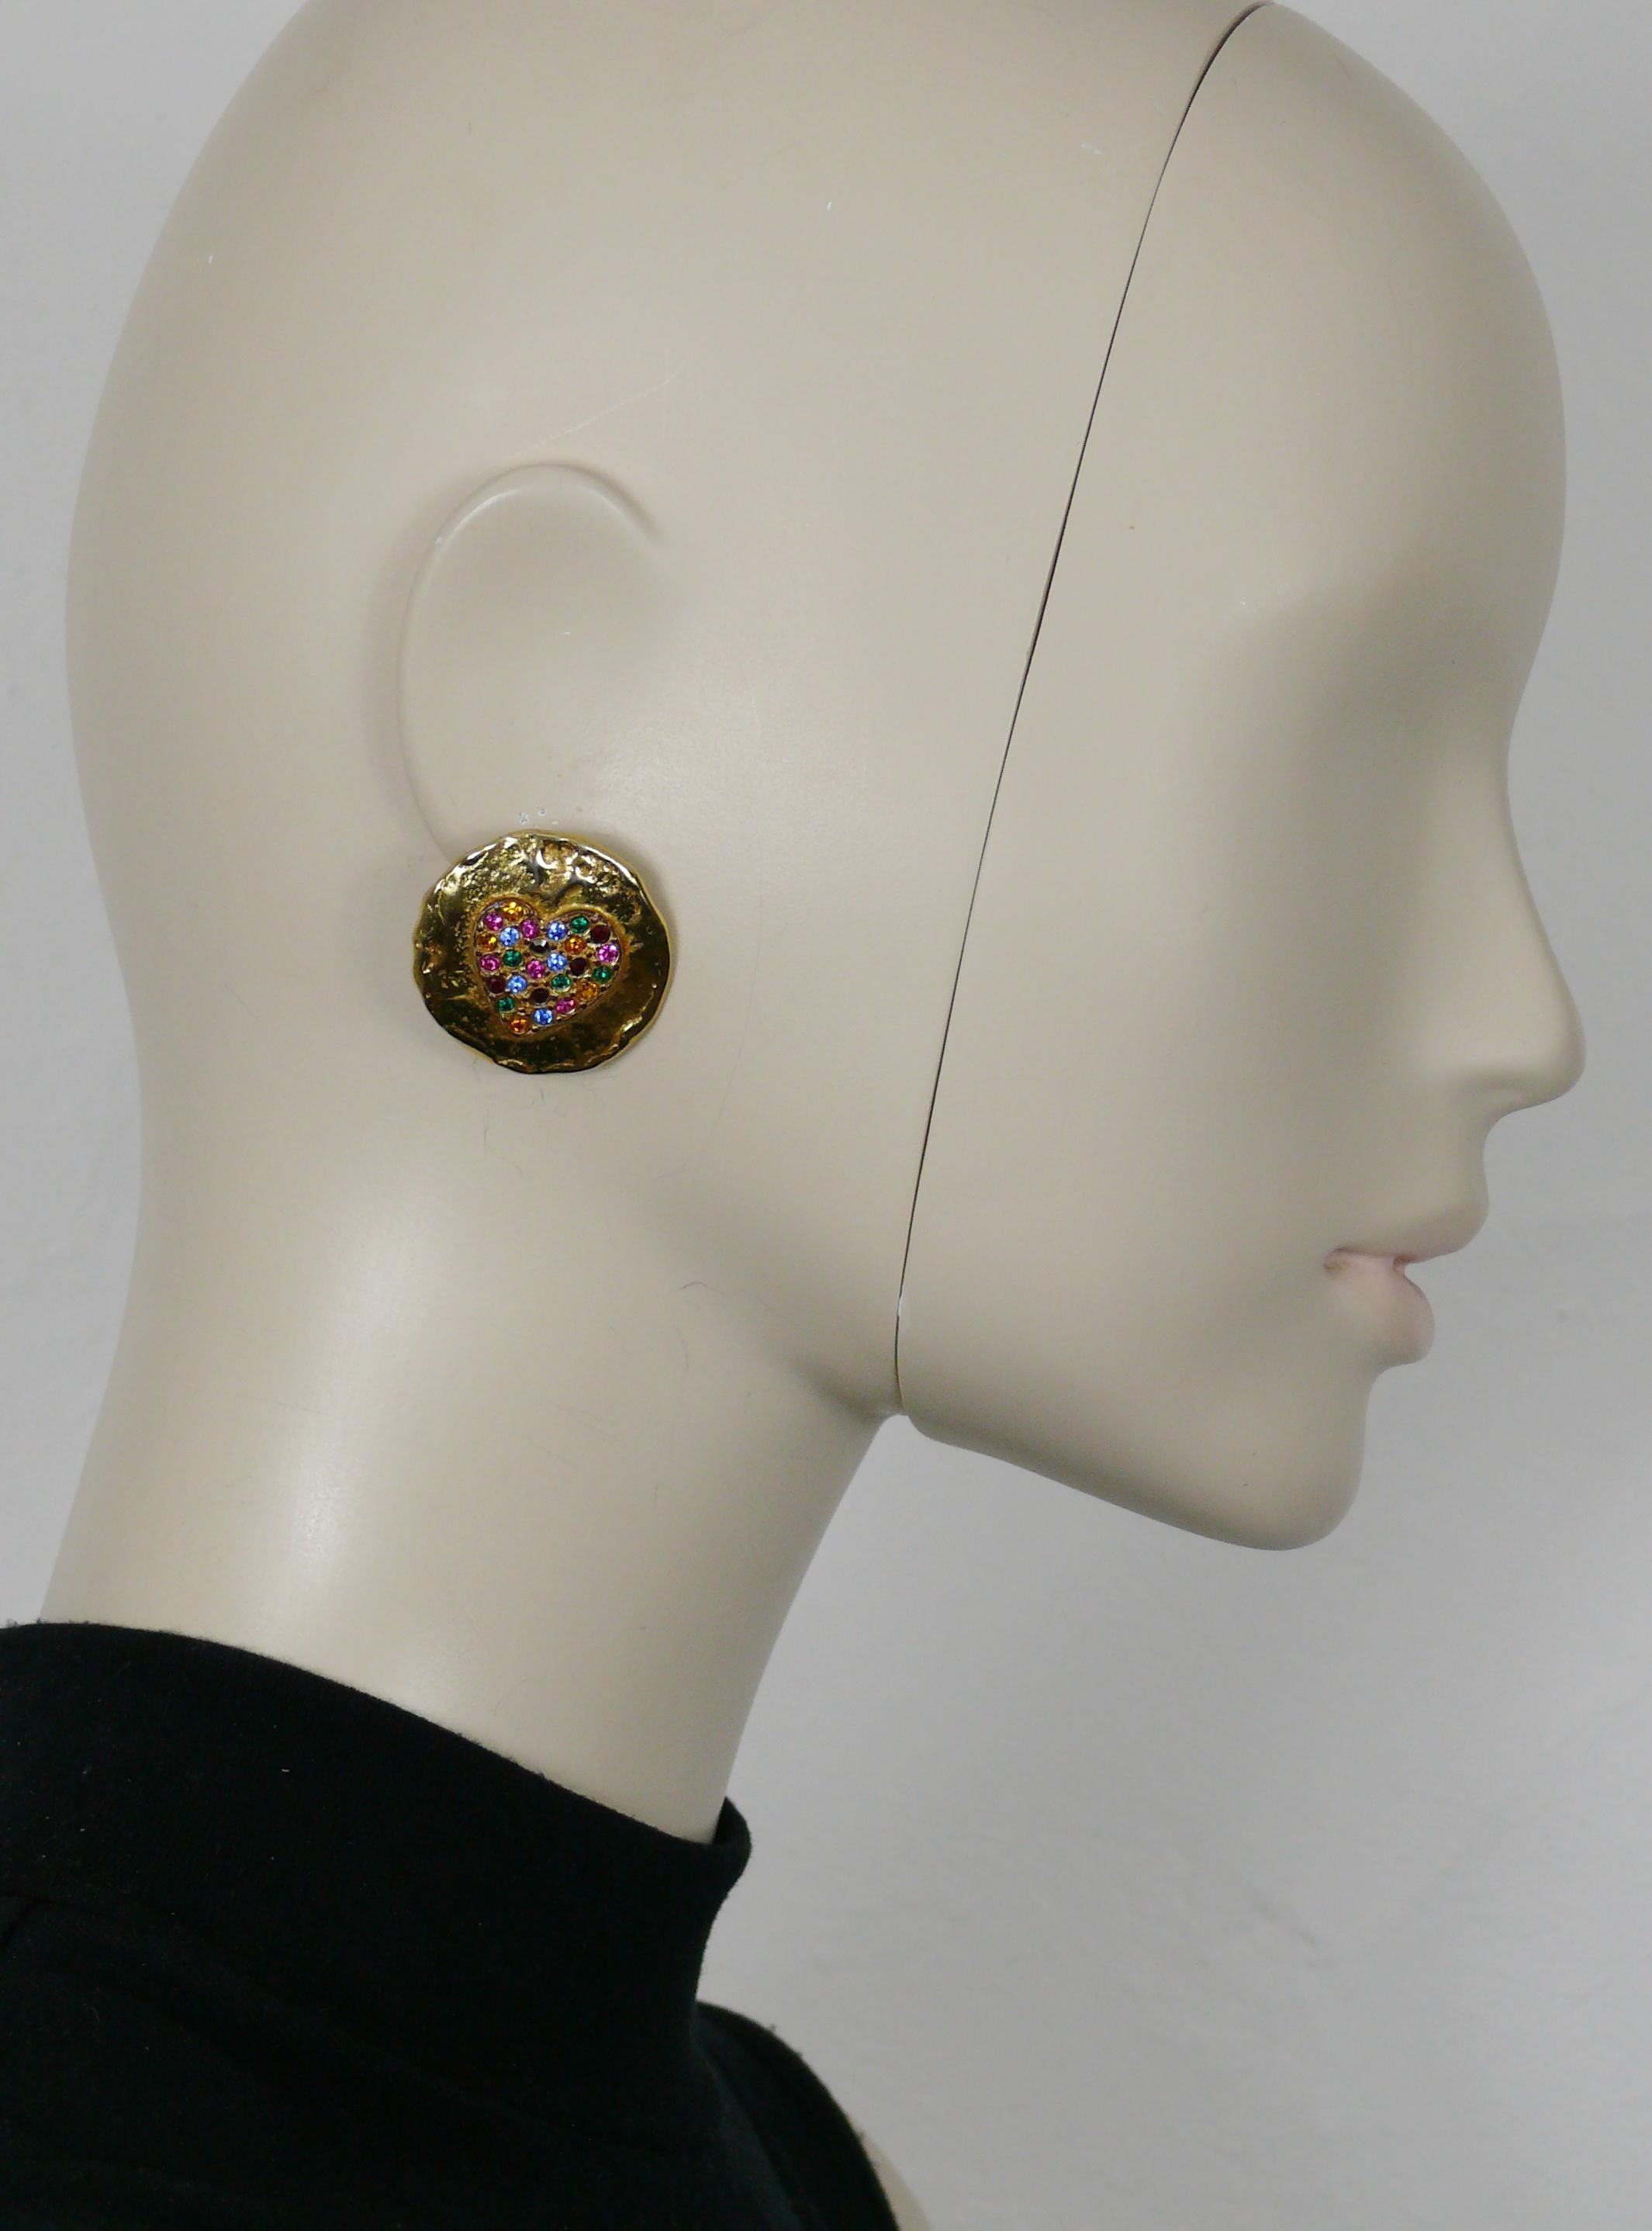 YVES SAINT LAURENT Vintage-Ohrringe in strukturiertem Goldton, die in der Mitte mit einem mehrfarbigen Kristallherz verziert sind.

Geprägtes YSL Made in France.

Ungefähre Maße: Höhe ca. 3 cm (1,18 Zoll) / Breite ca. 3 cm (1,18 Zoll).

Gewicht pro